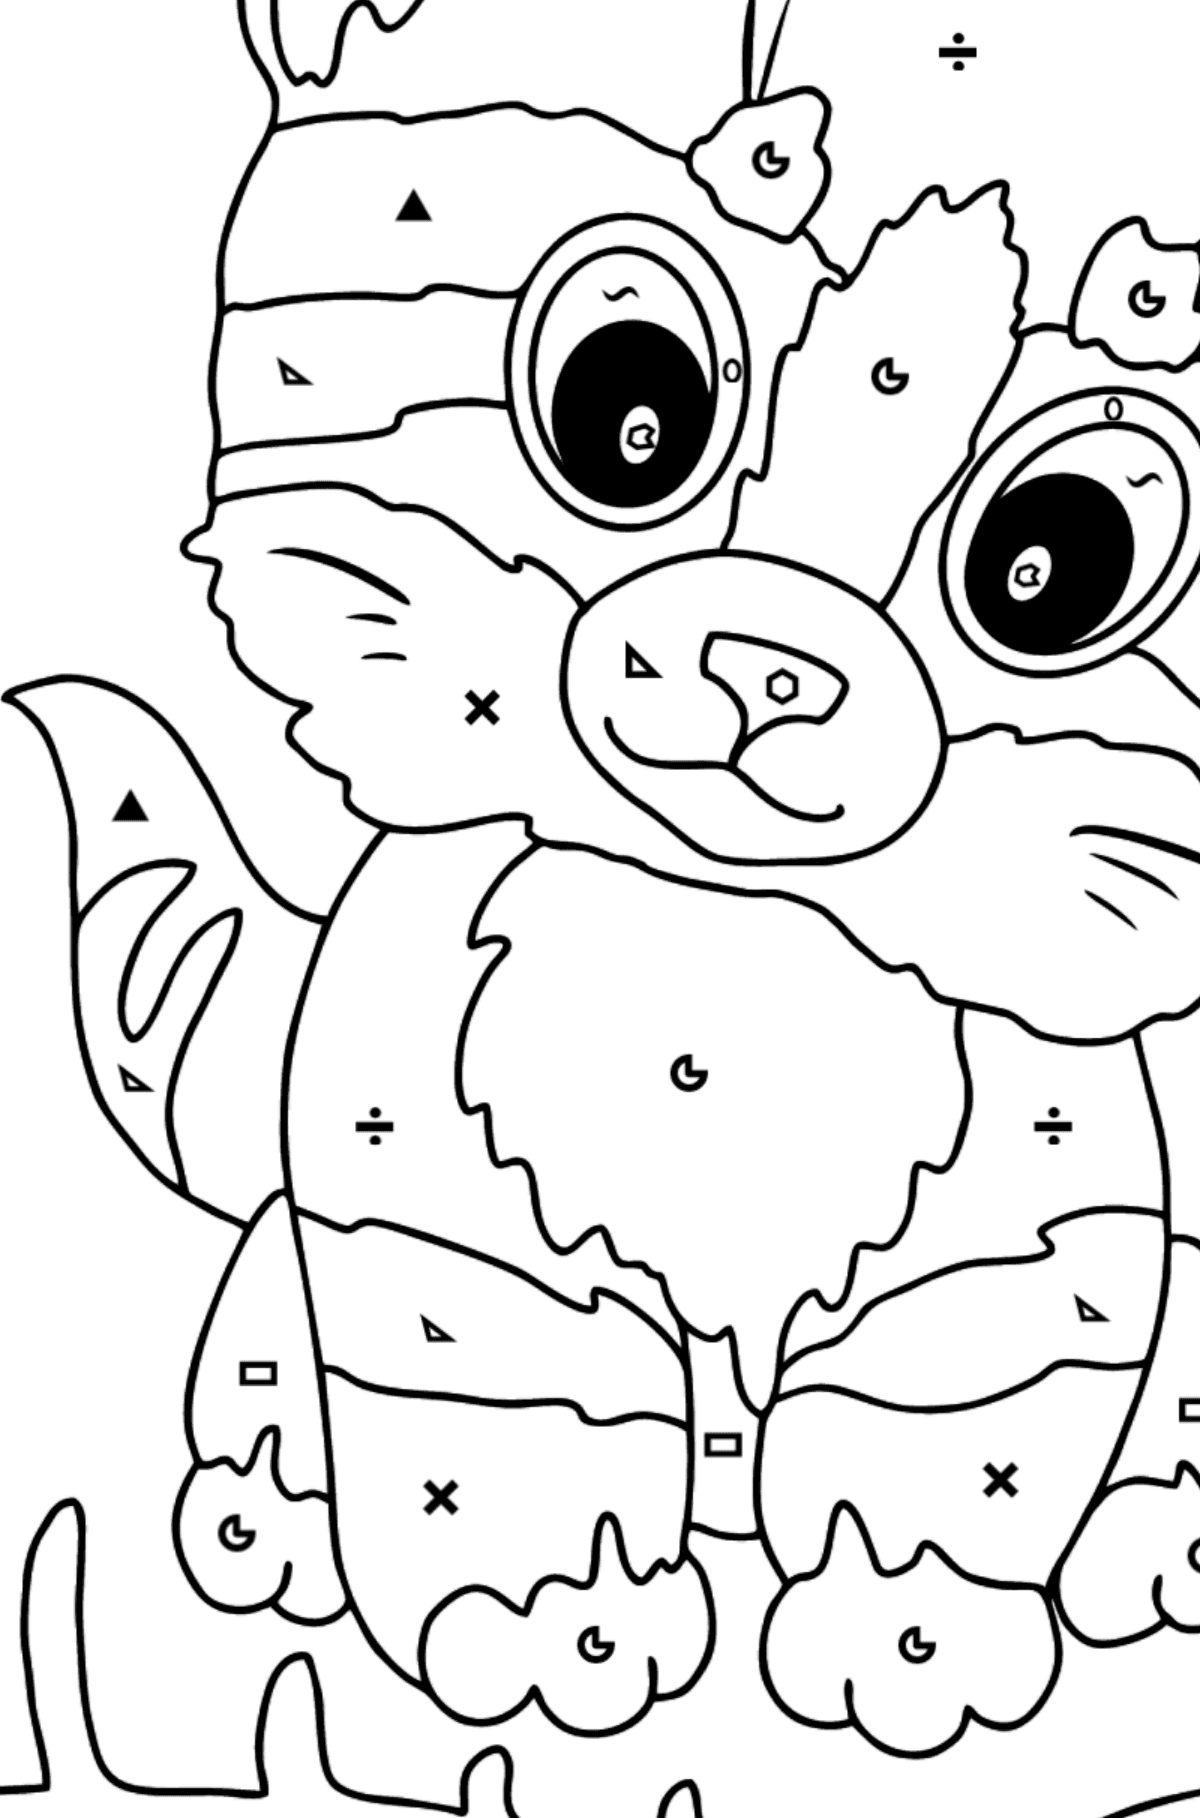 Kolorowanka Kot z rybą kością - Kolorowanie według symboli i figur geometrycznych dla dzieci